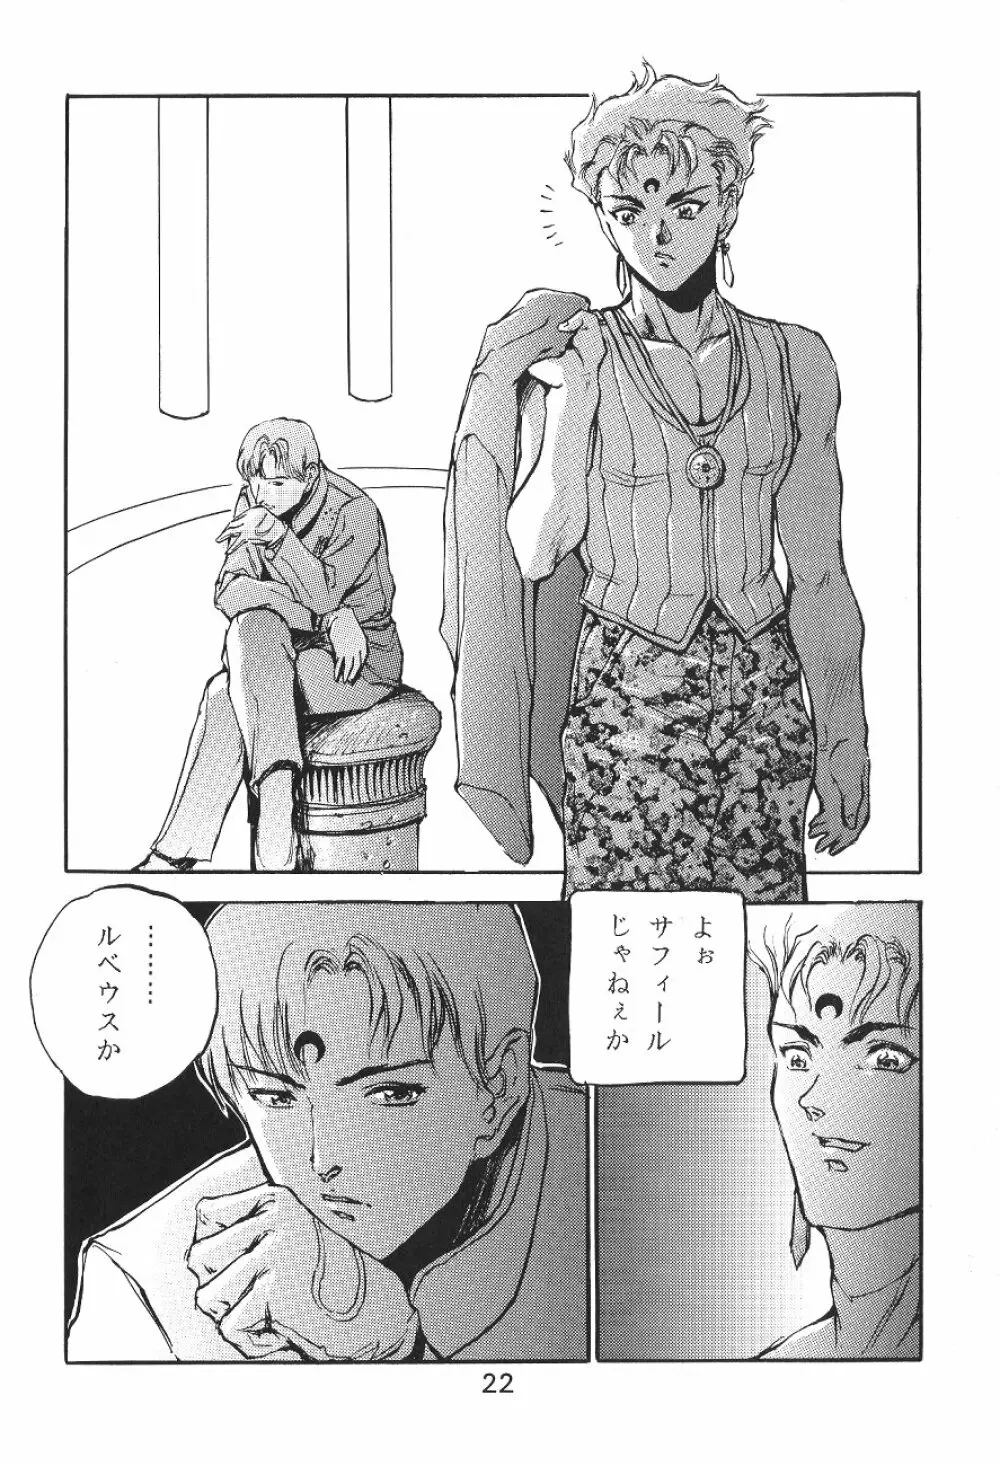 KATZE 7 上巻 - page22